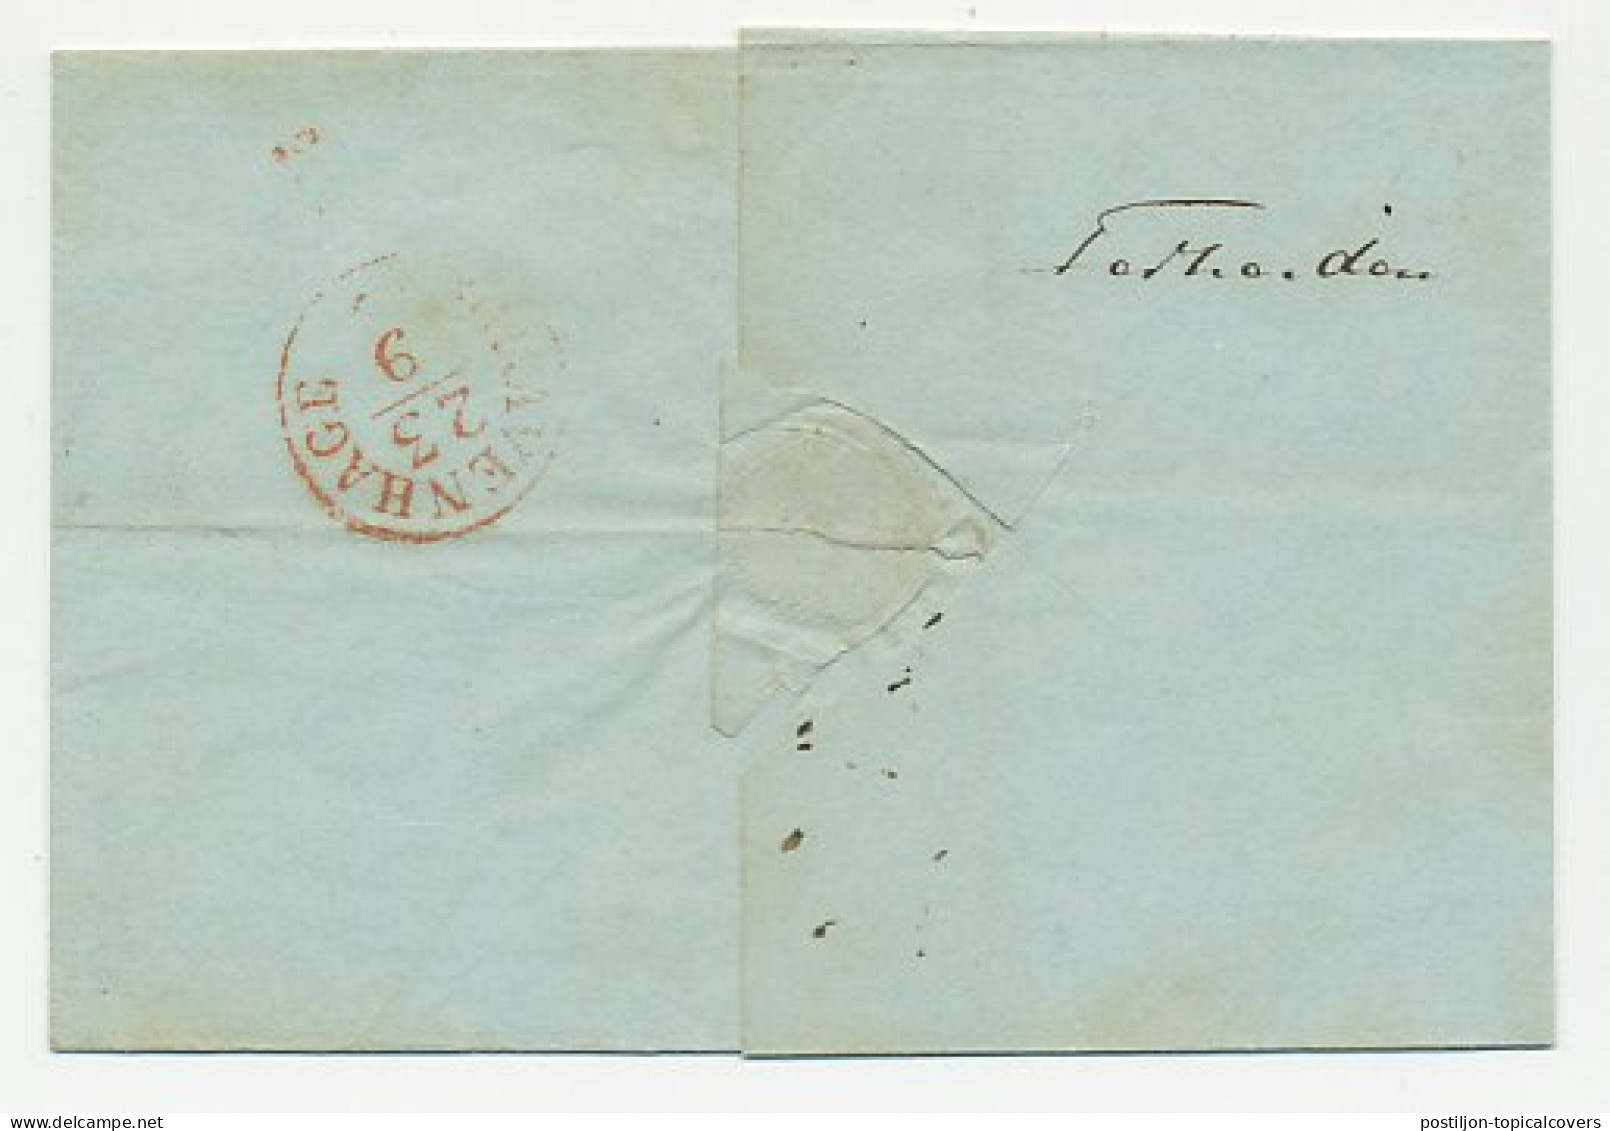 Distributiekantoor Terheiden - Dordrecht - Den Haag 1843 - ...-1852 Voorlopers